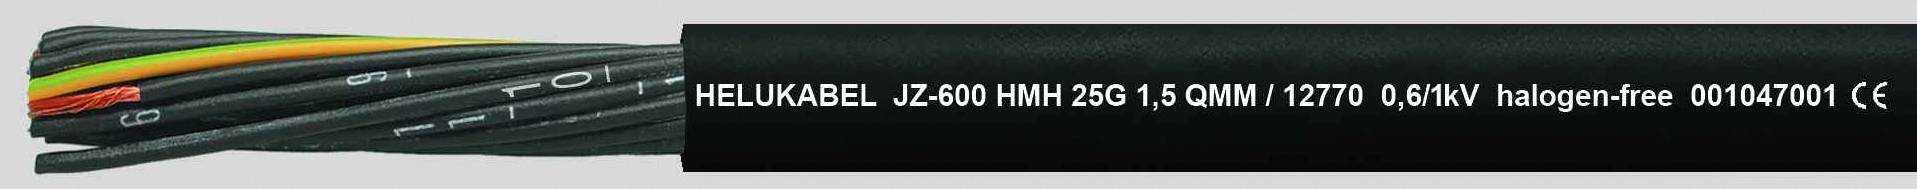 HELUKABEL JZ-600 HMH Steuerleitung 7 G 2.50 mm² Schwarz 12778-500 500 m